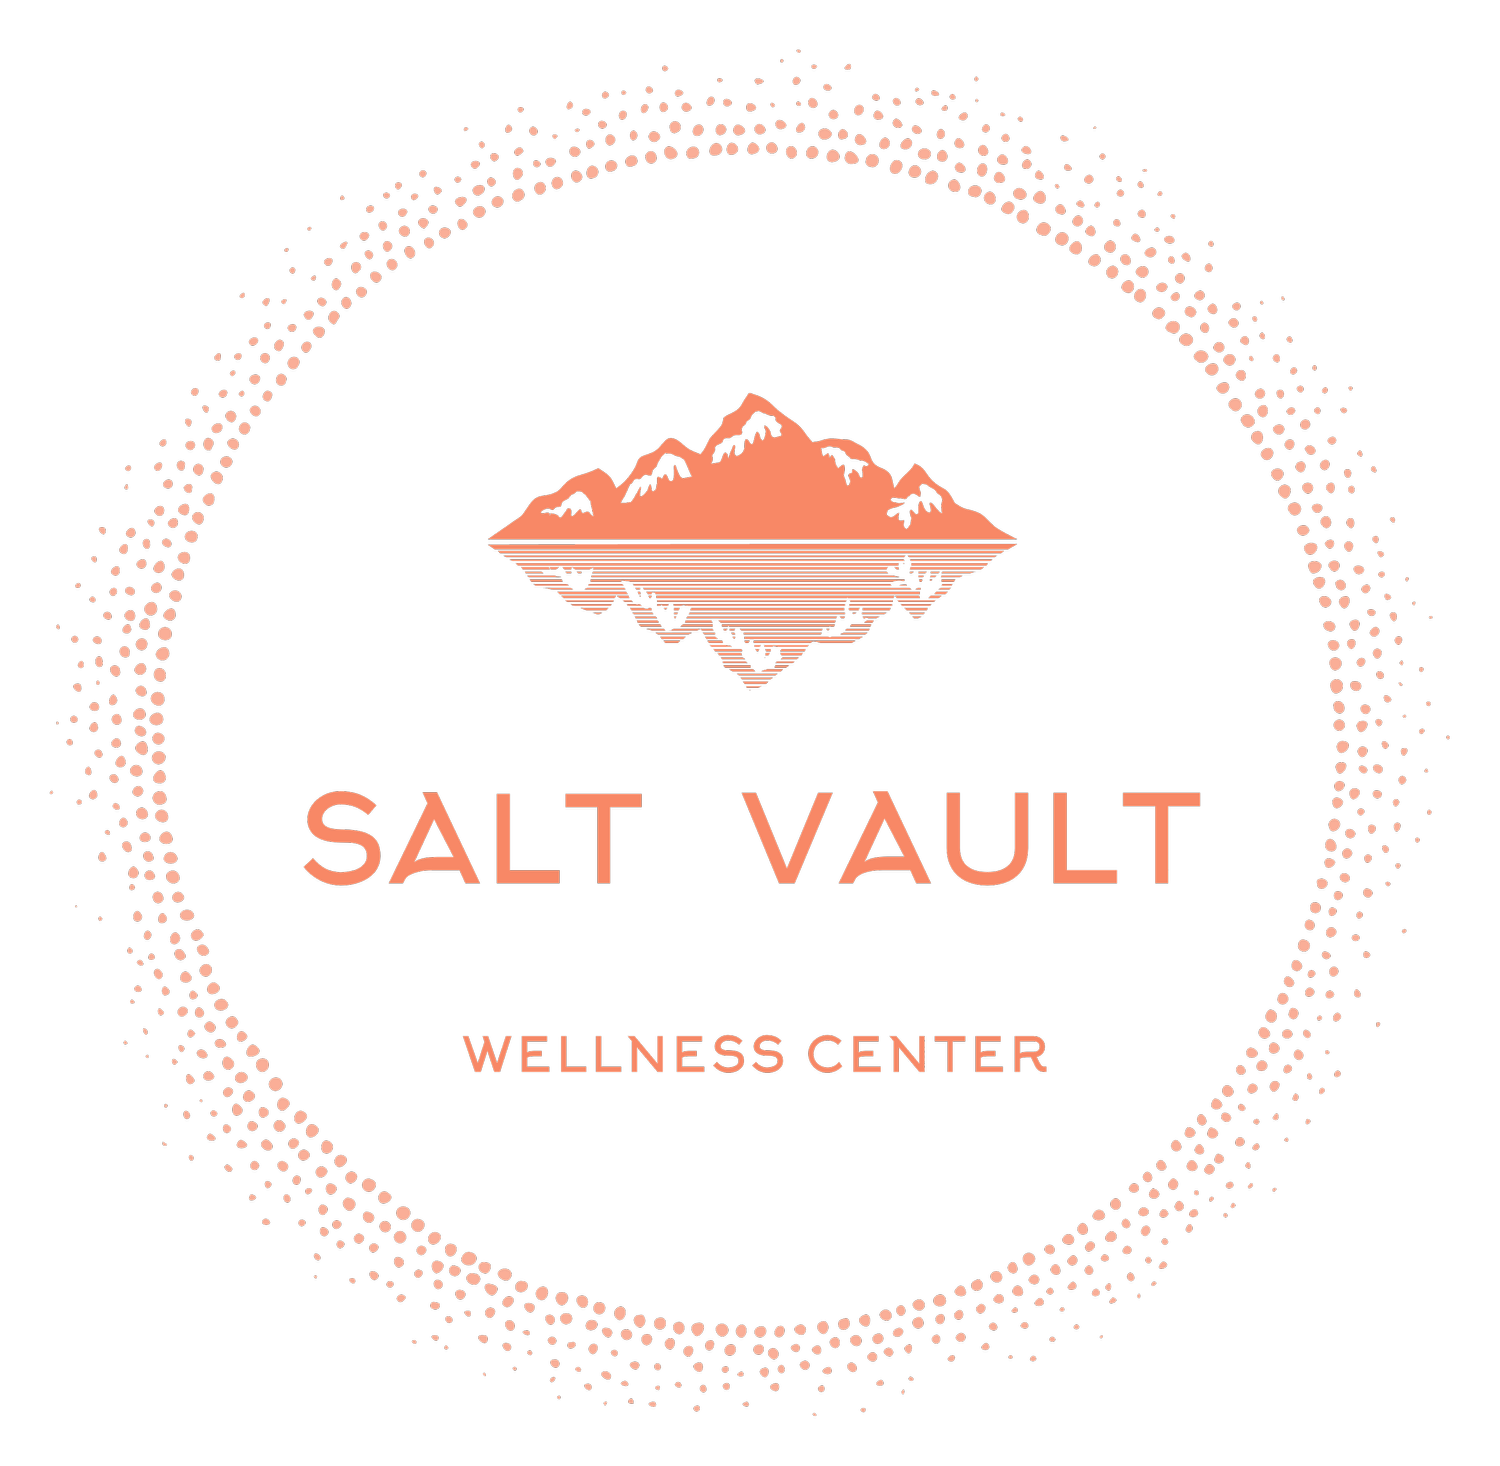 Salt Vault Wellness Center